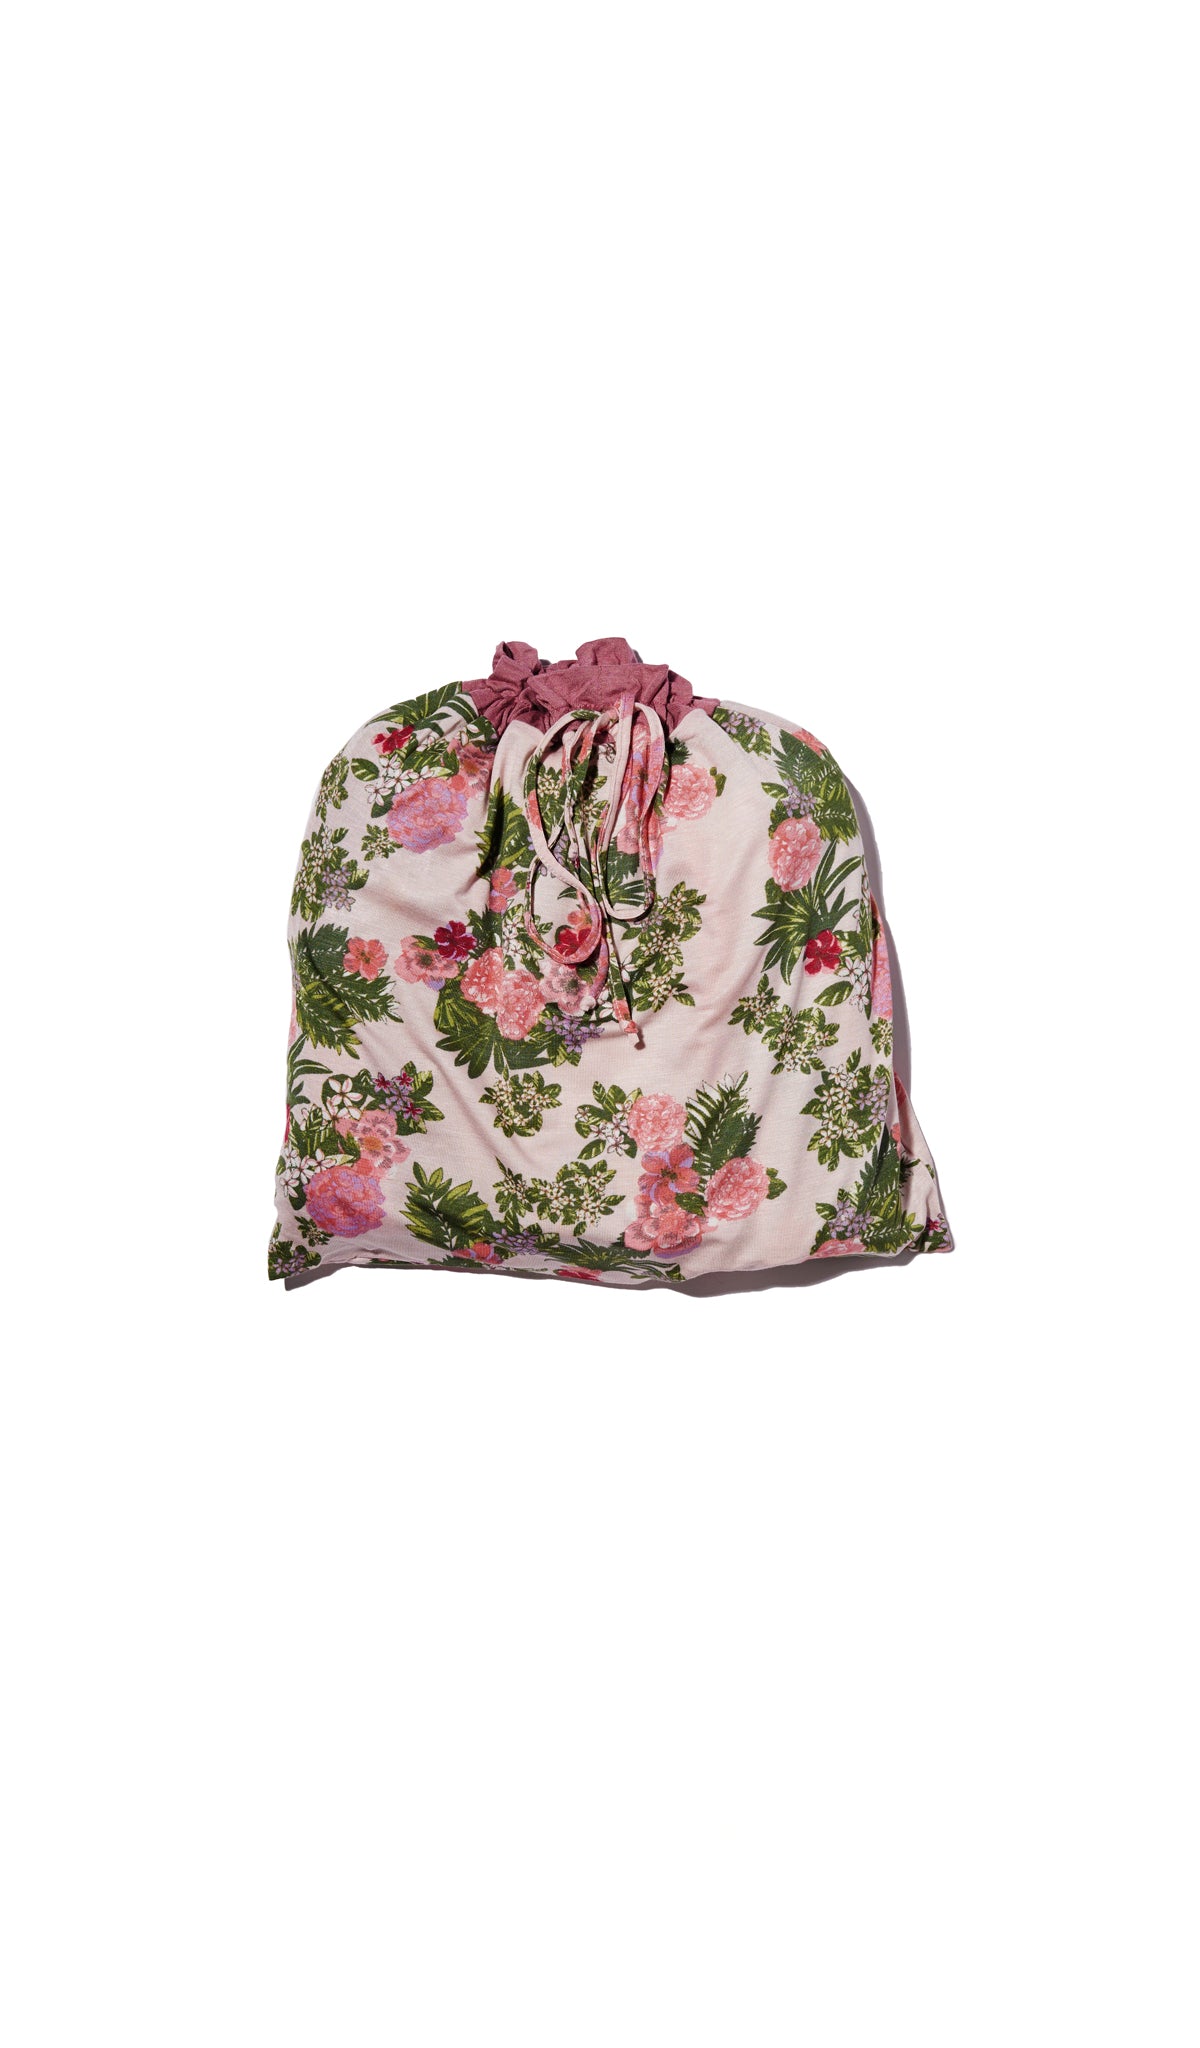 Beige Floral Adalia 5-Piece Set. Flat shot of matching drawstring gift bag.